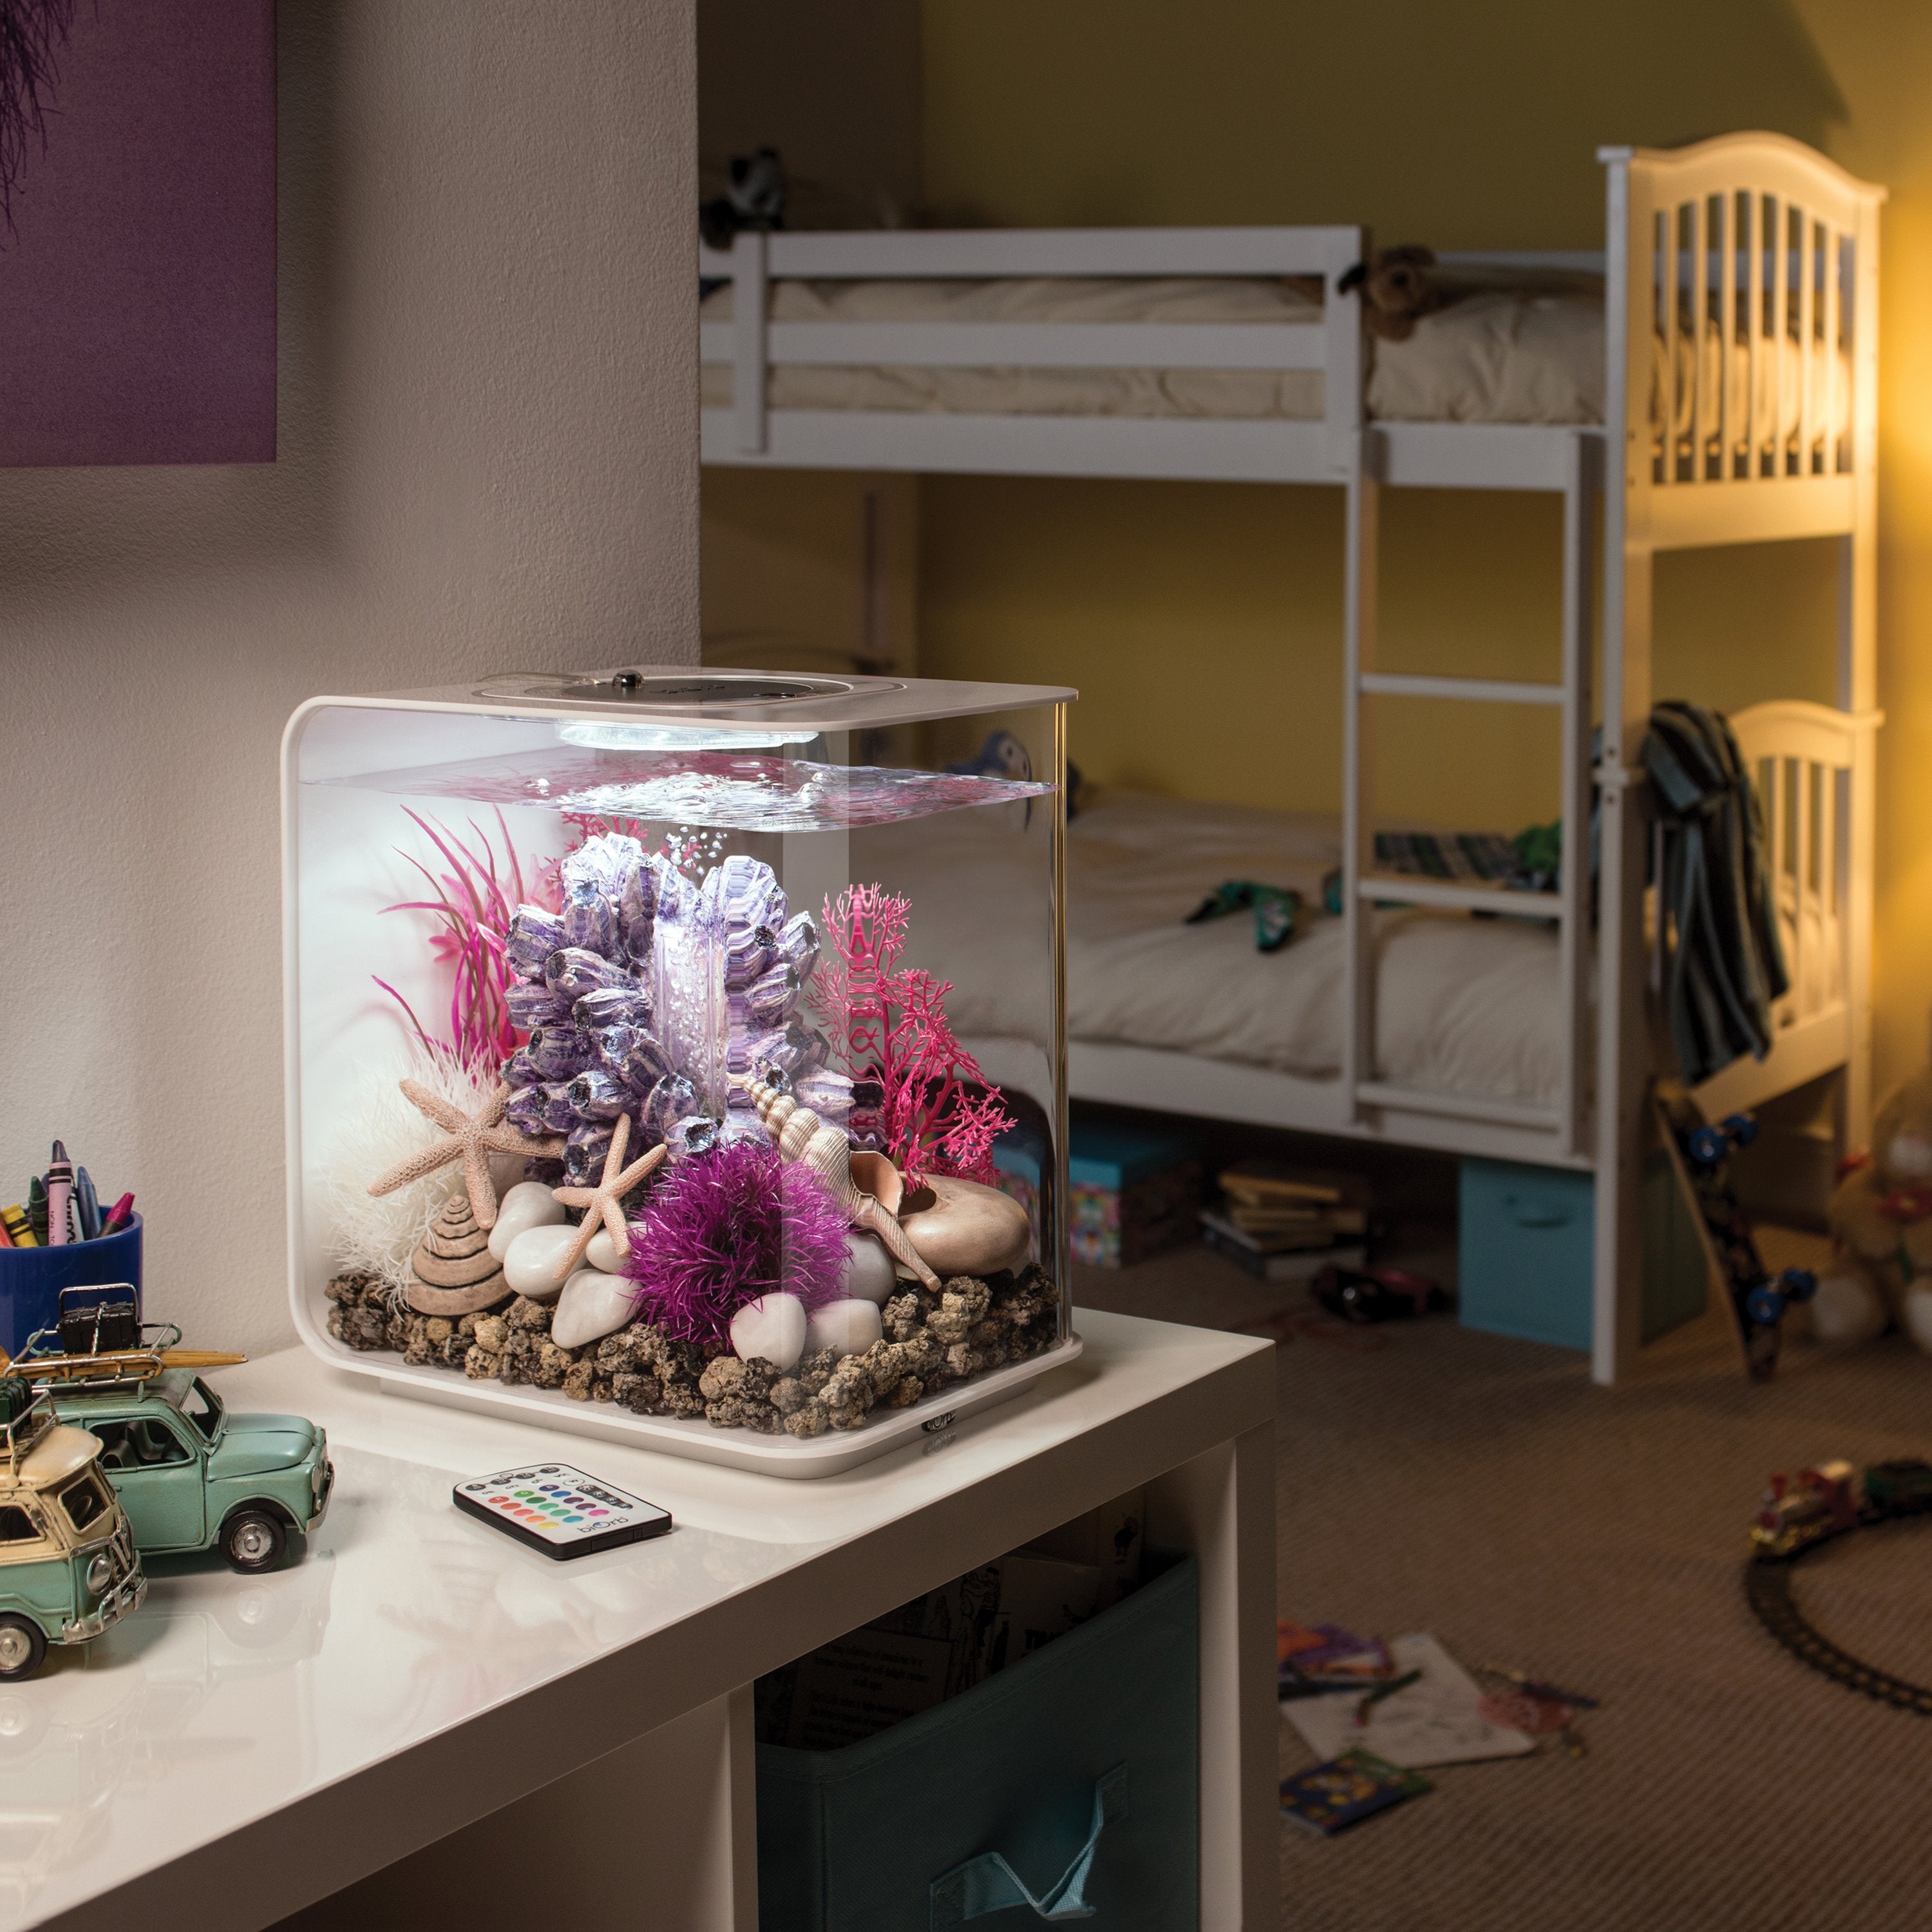 Get inspiration for your aquarium design by using the biOrb Plant Set